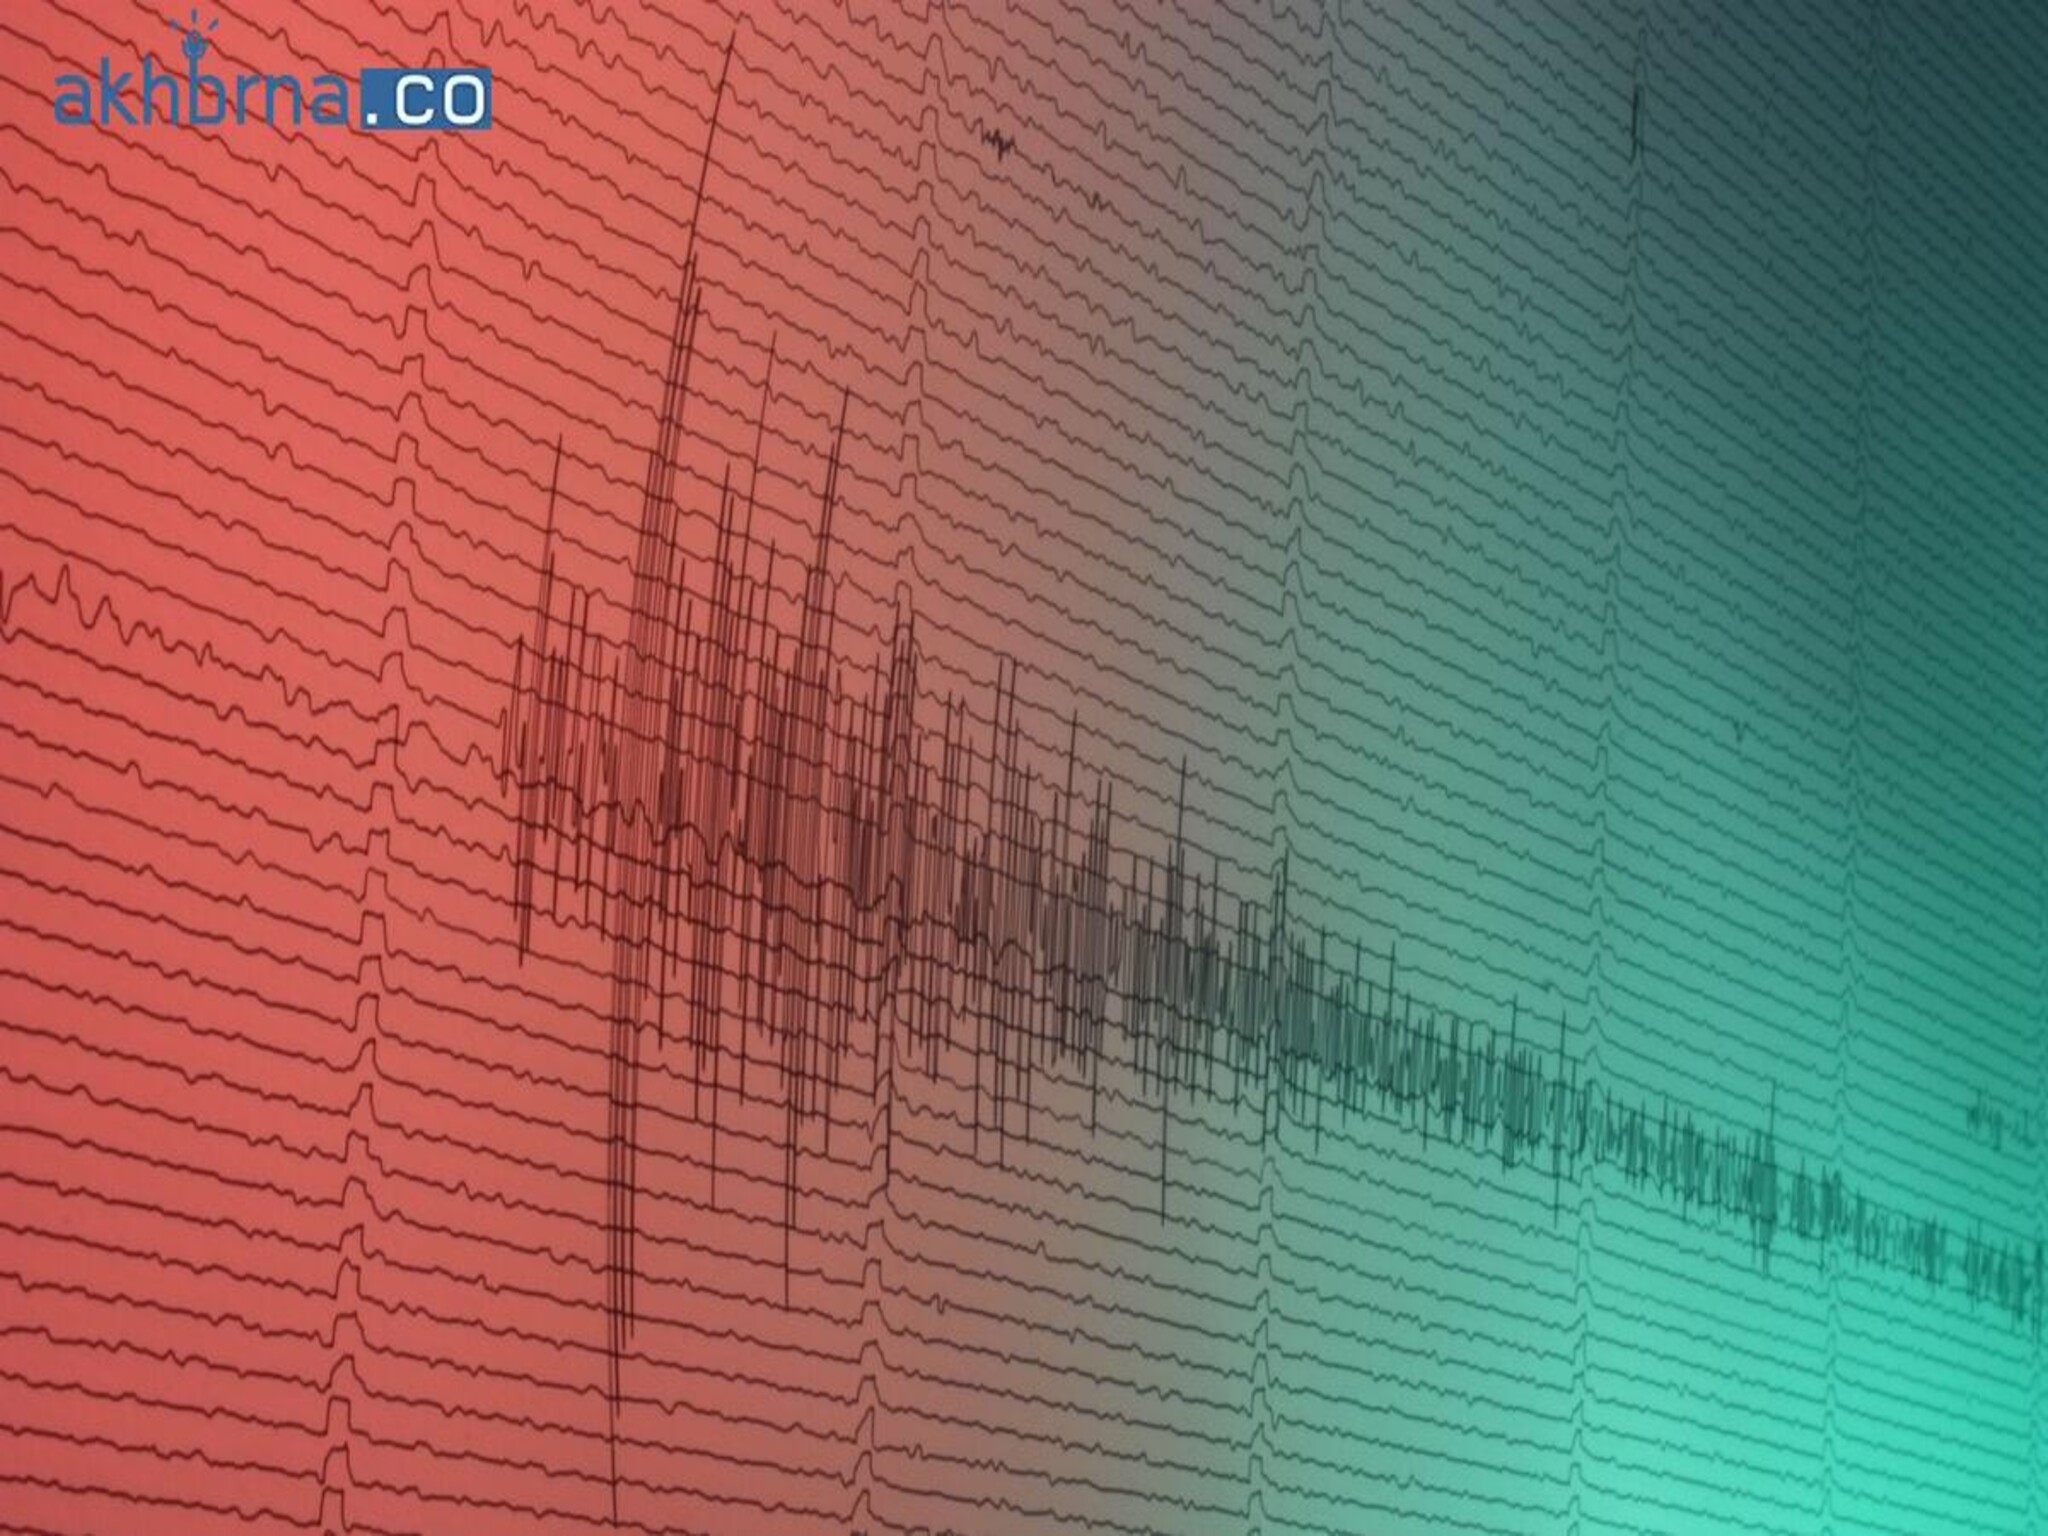 A strong magnitude 6.2 earthquake struck near the coast of Venezuela